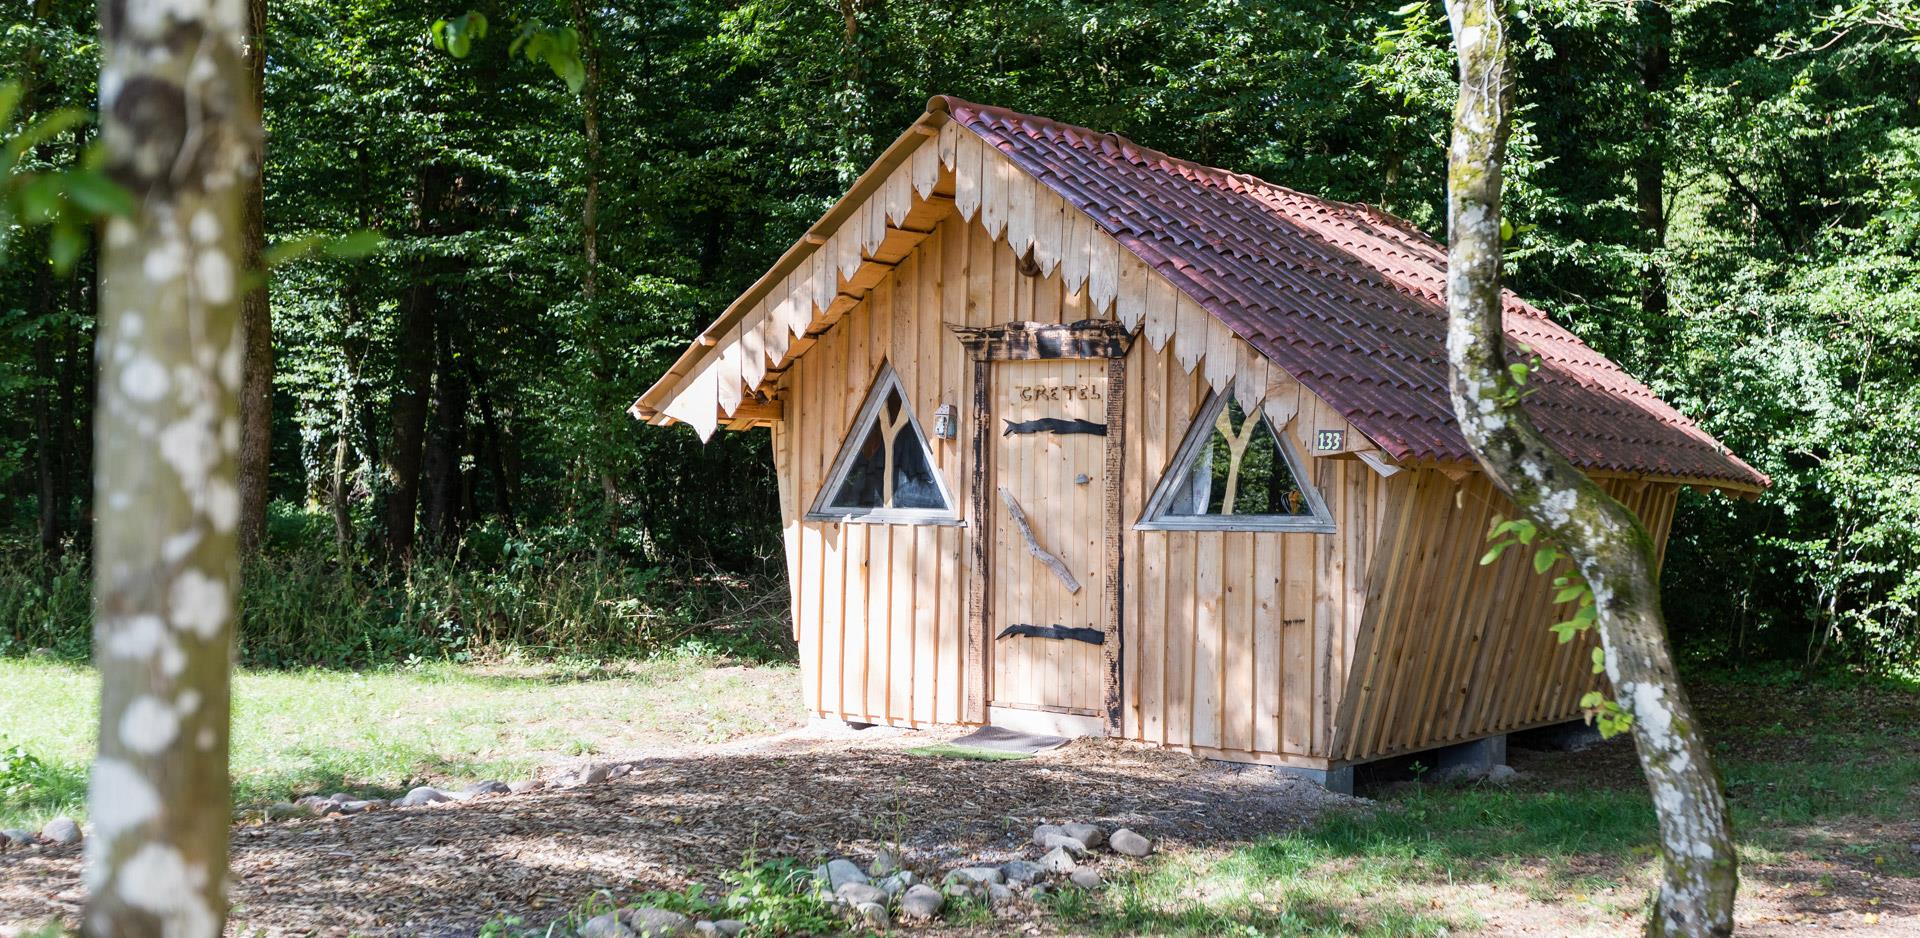 Location d'hébergements insolites dans les Vosges : vue de la cabane insolite Gretel